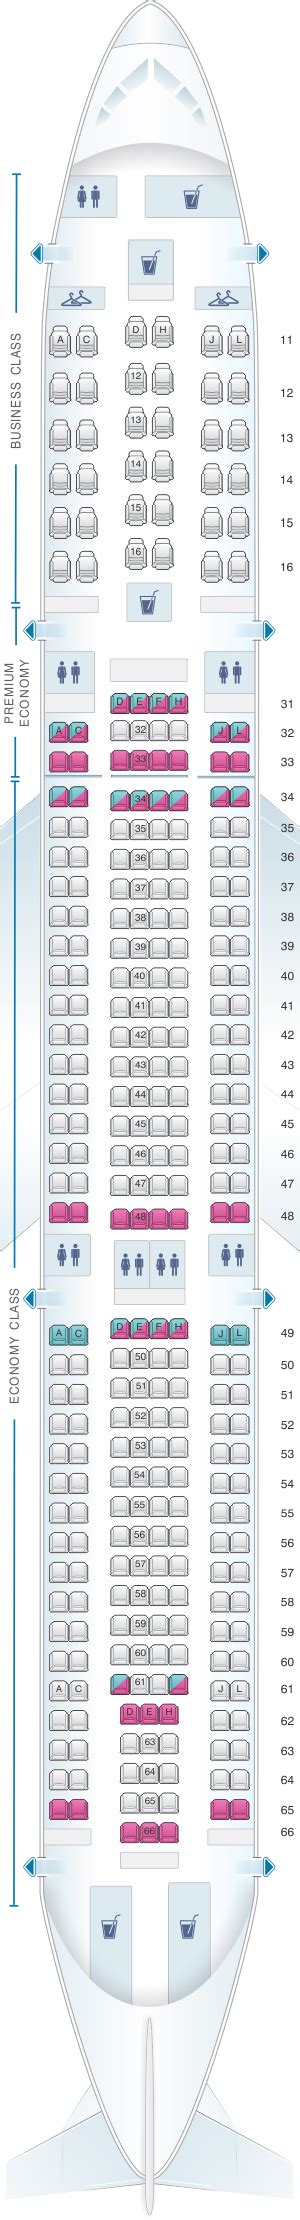 Seat Map Air China Airbus A330 300 311pax